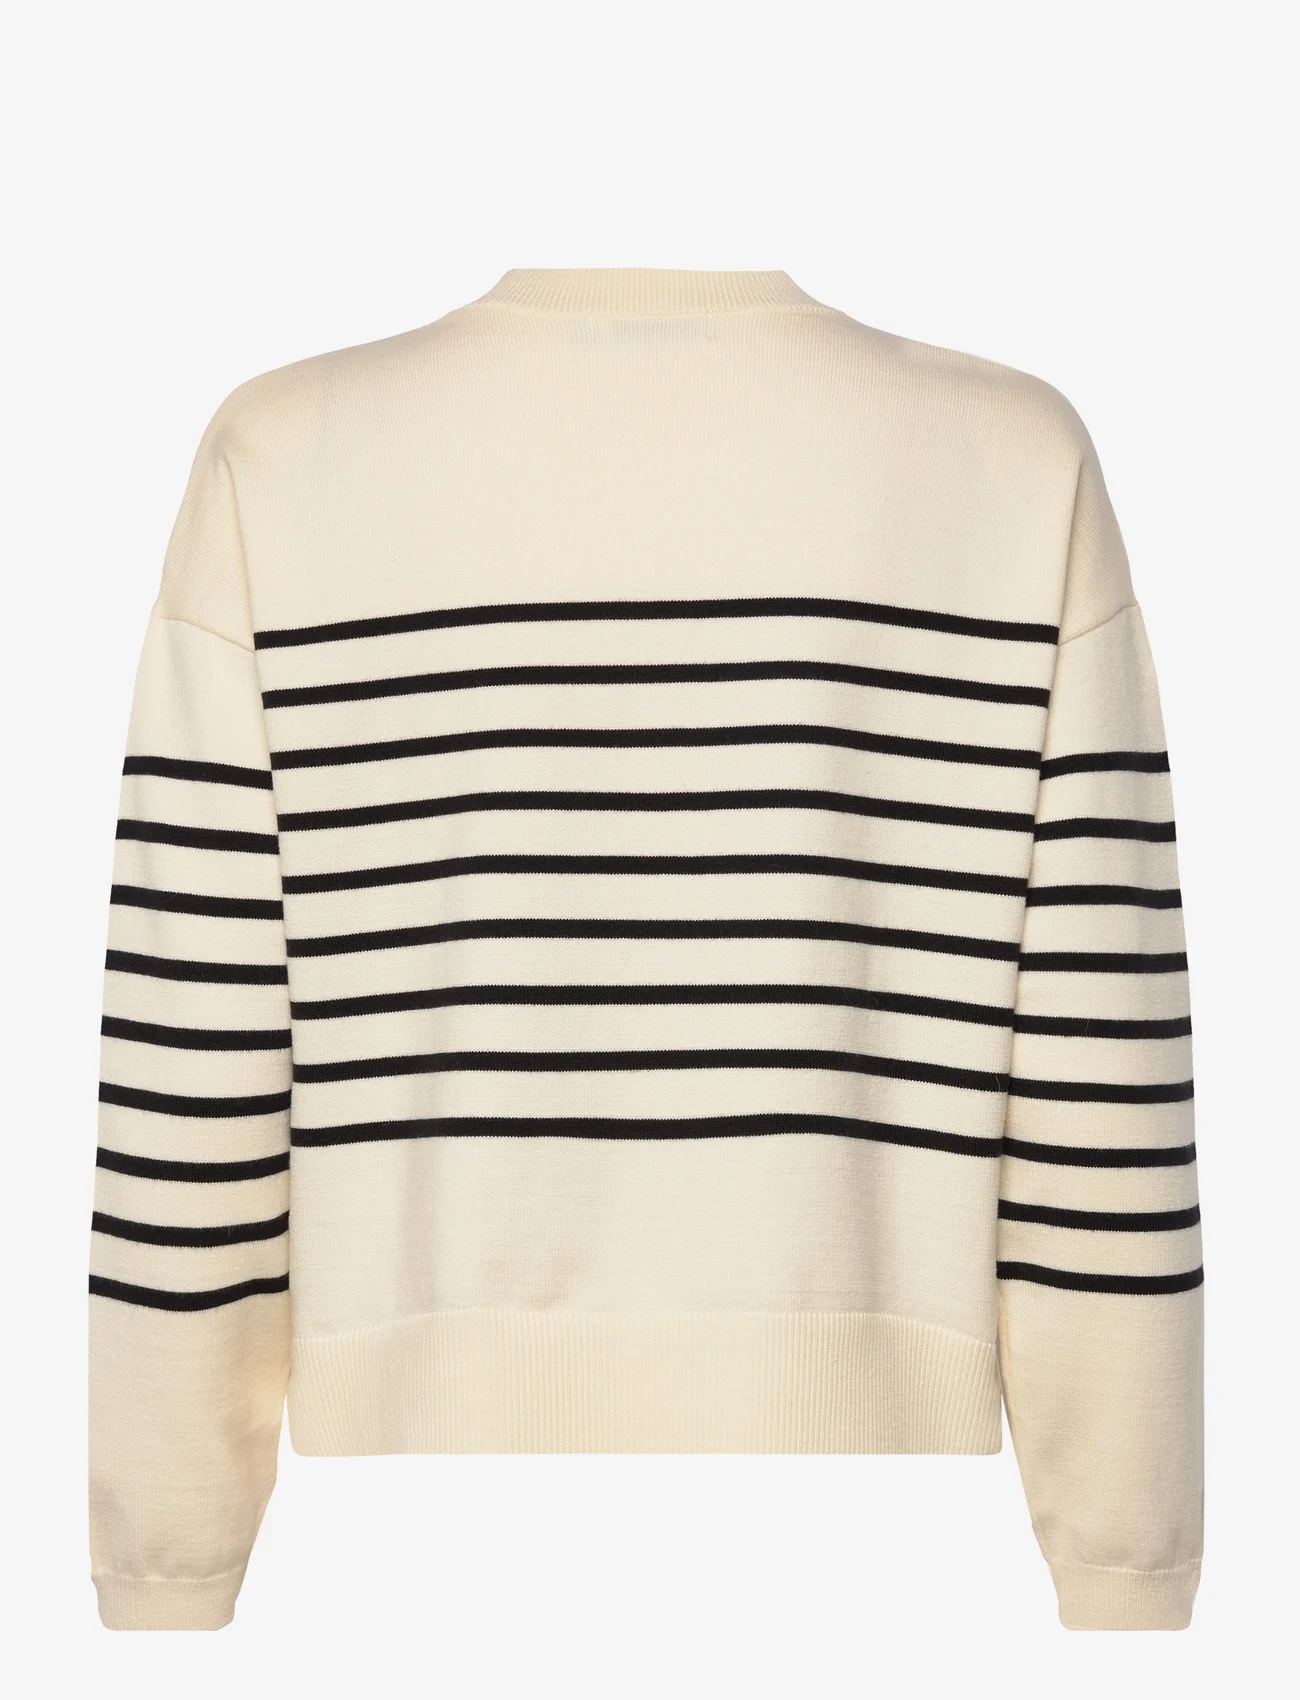 Coster Copenhagen - CC Heart COLLINS comfy stripe knit - pullover - creme/black stripe - 1